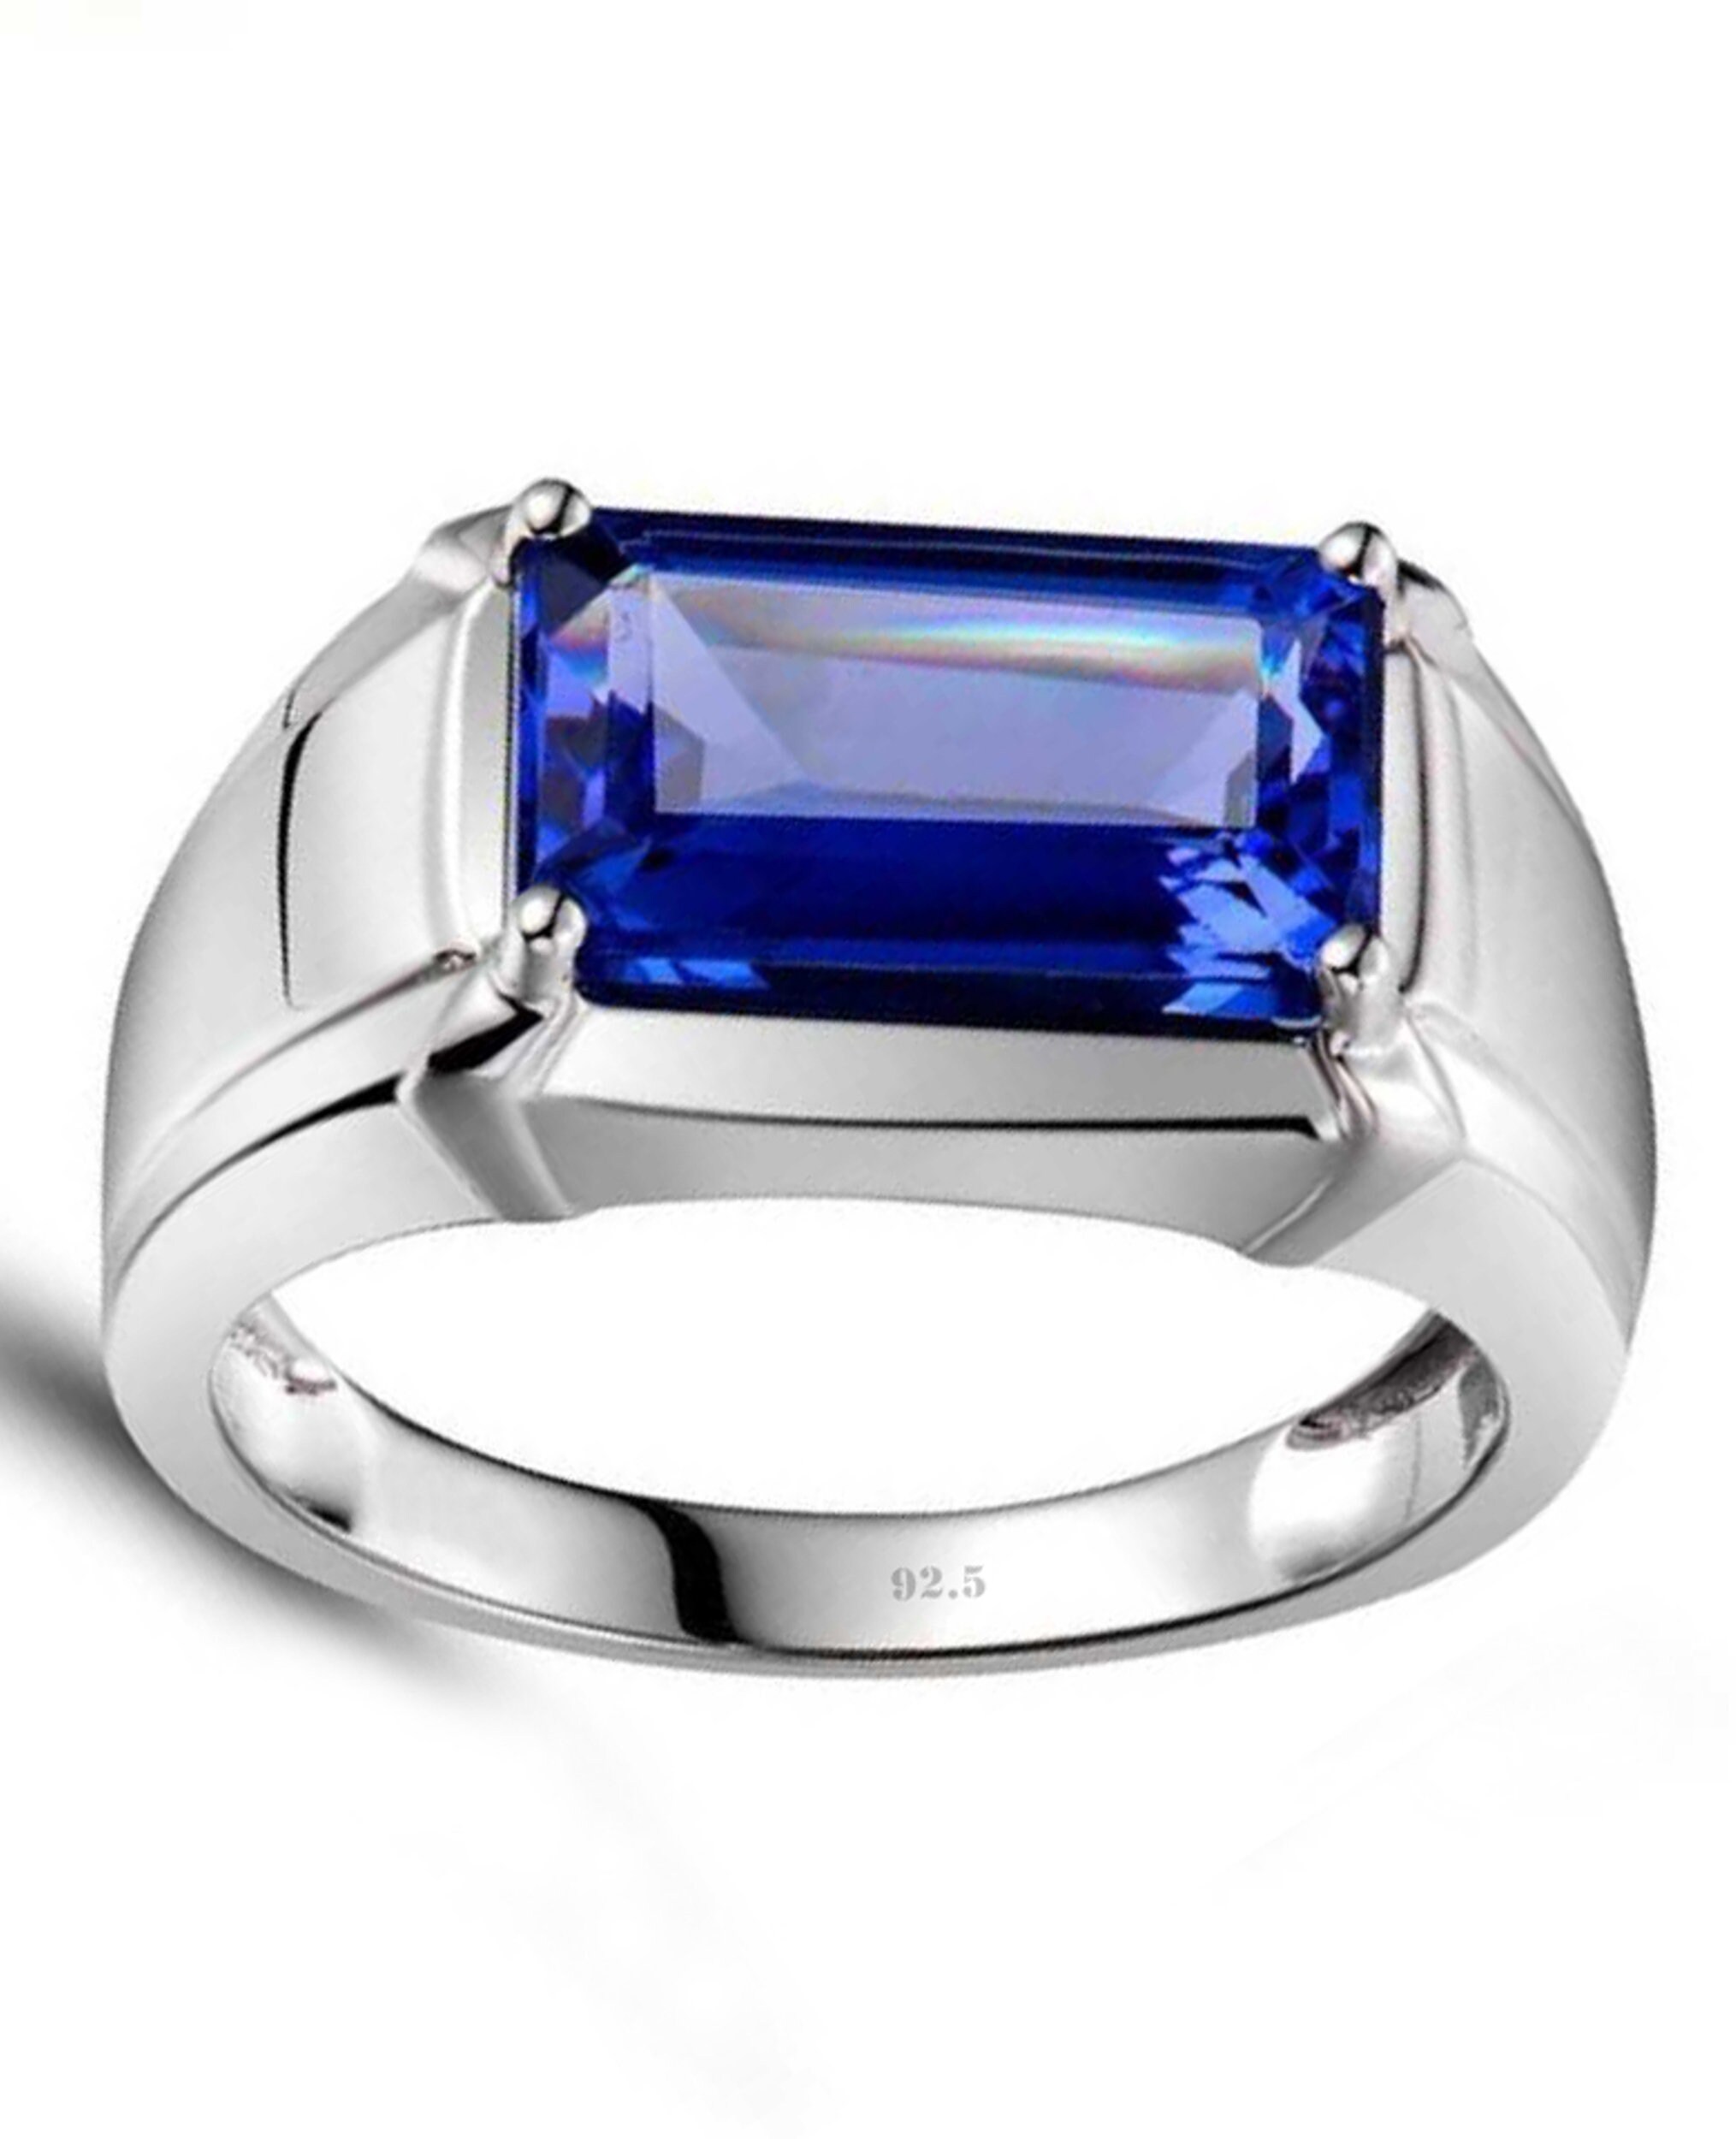 Mystic Topaz Ring , Mystic Topaz Jewelry , Mystic Topaz Ring Sterling  Silver , Anniversary Gift , Birthstone Ring , Boyfriend Birthday Gift - Etsy